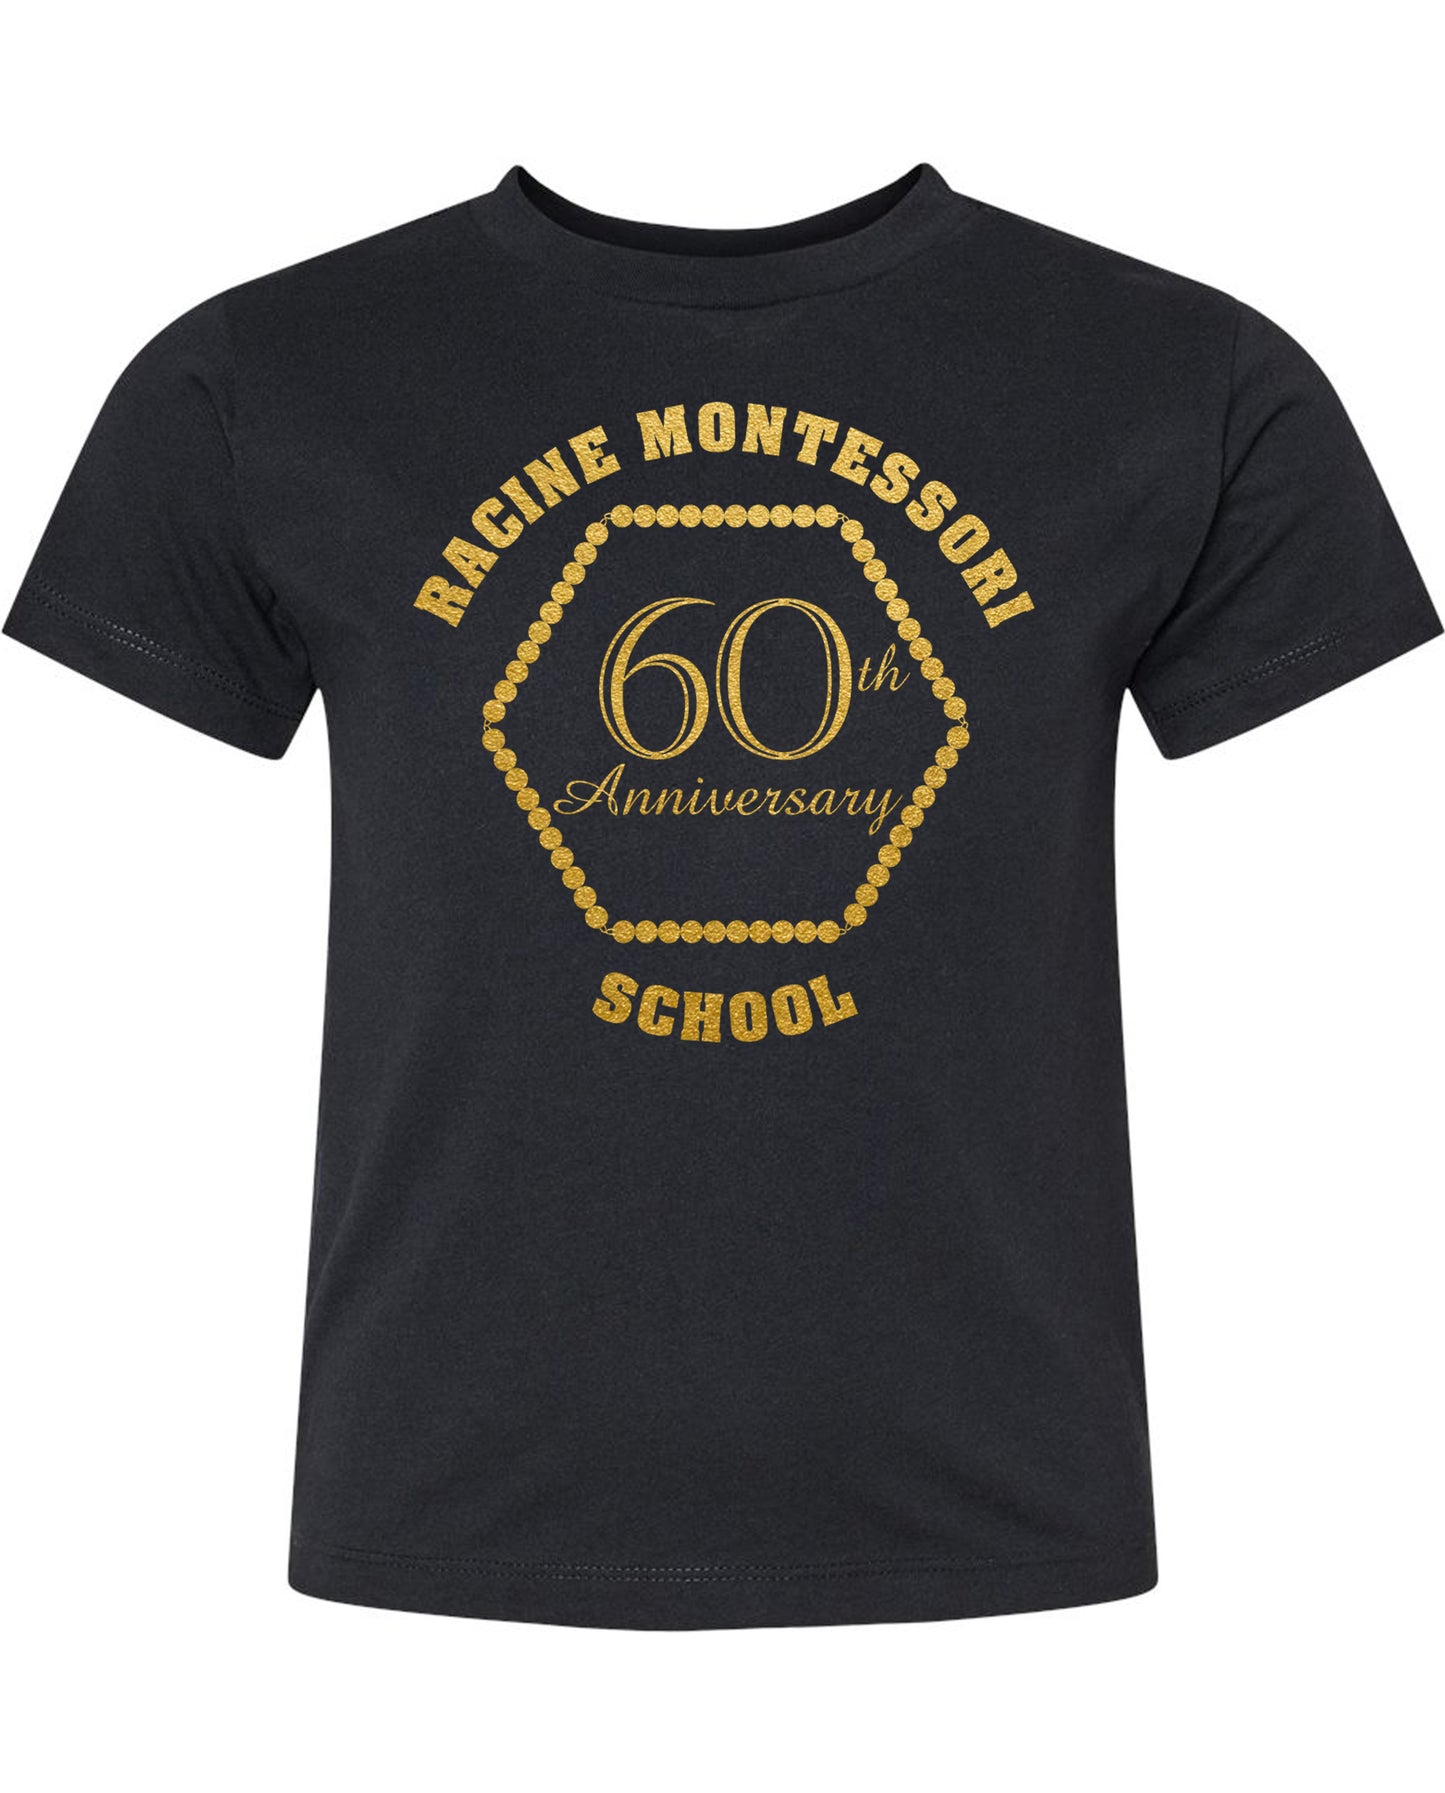 Racine Montessori 60th Anniversary T-shirt